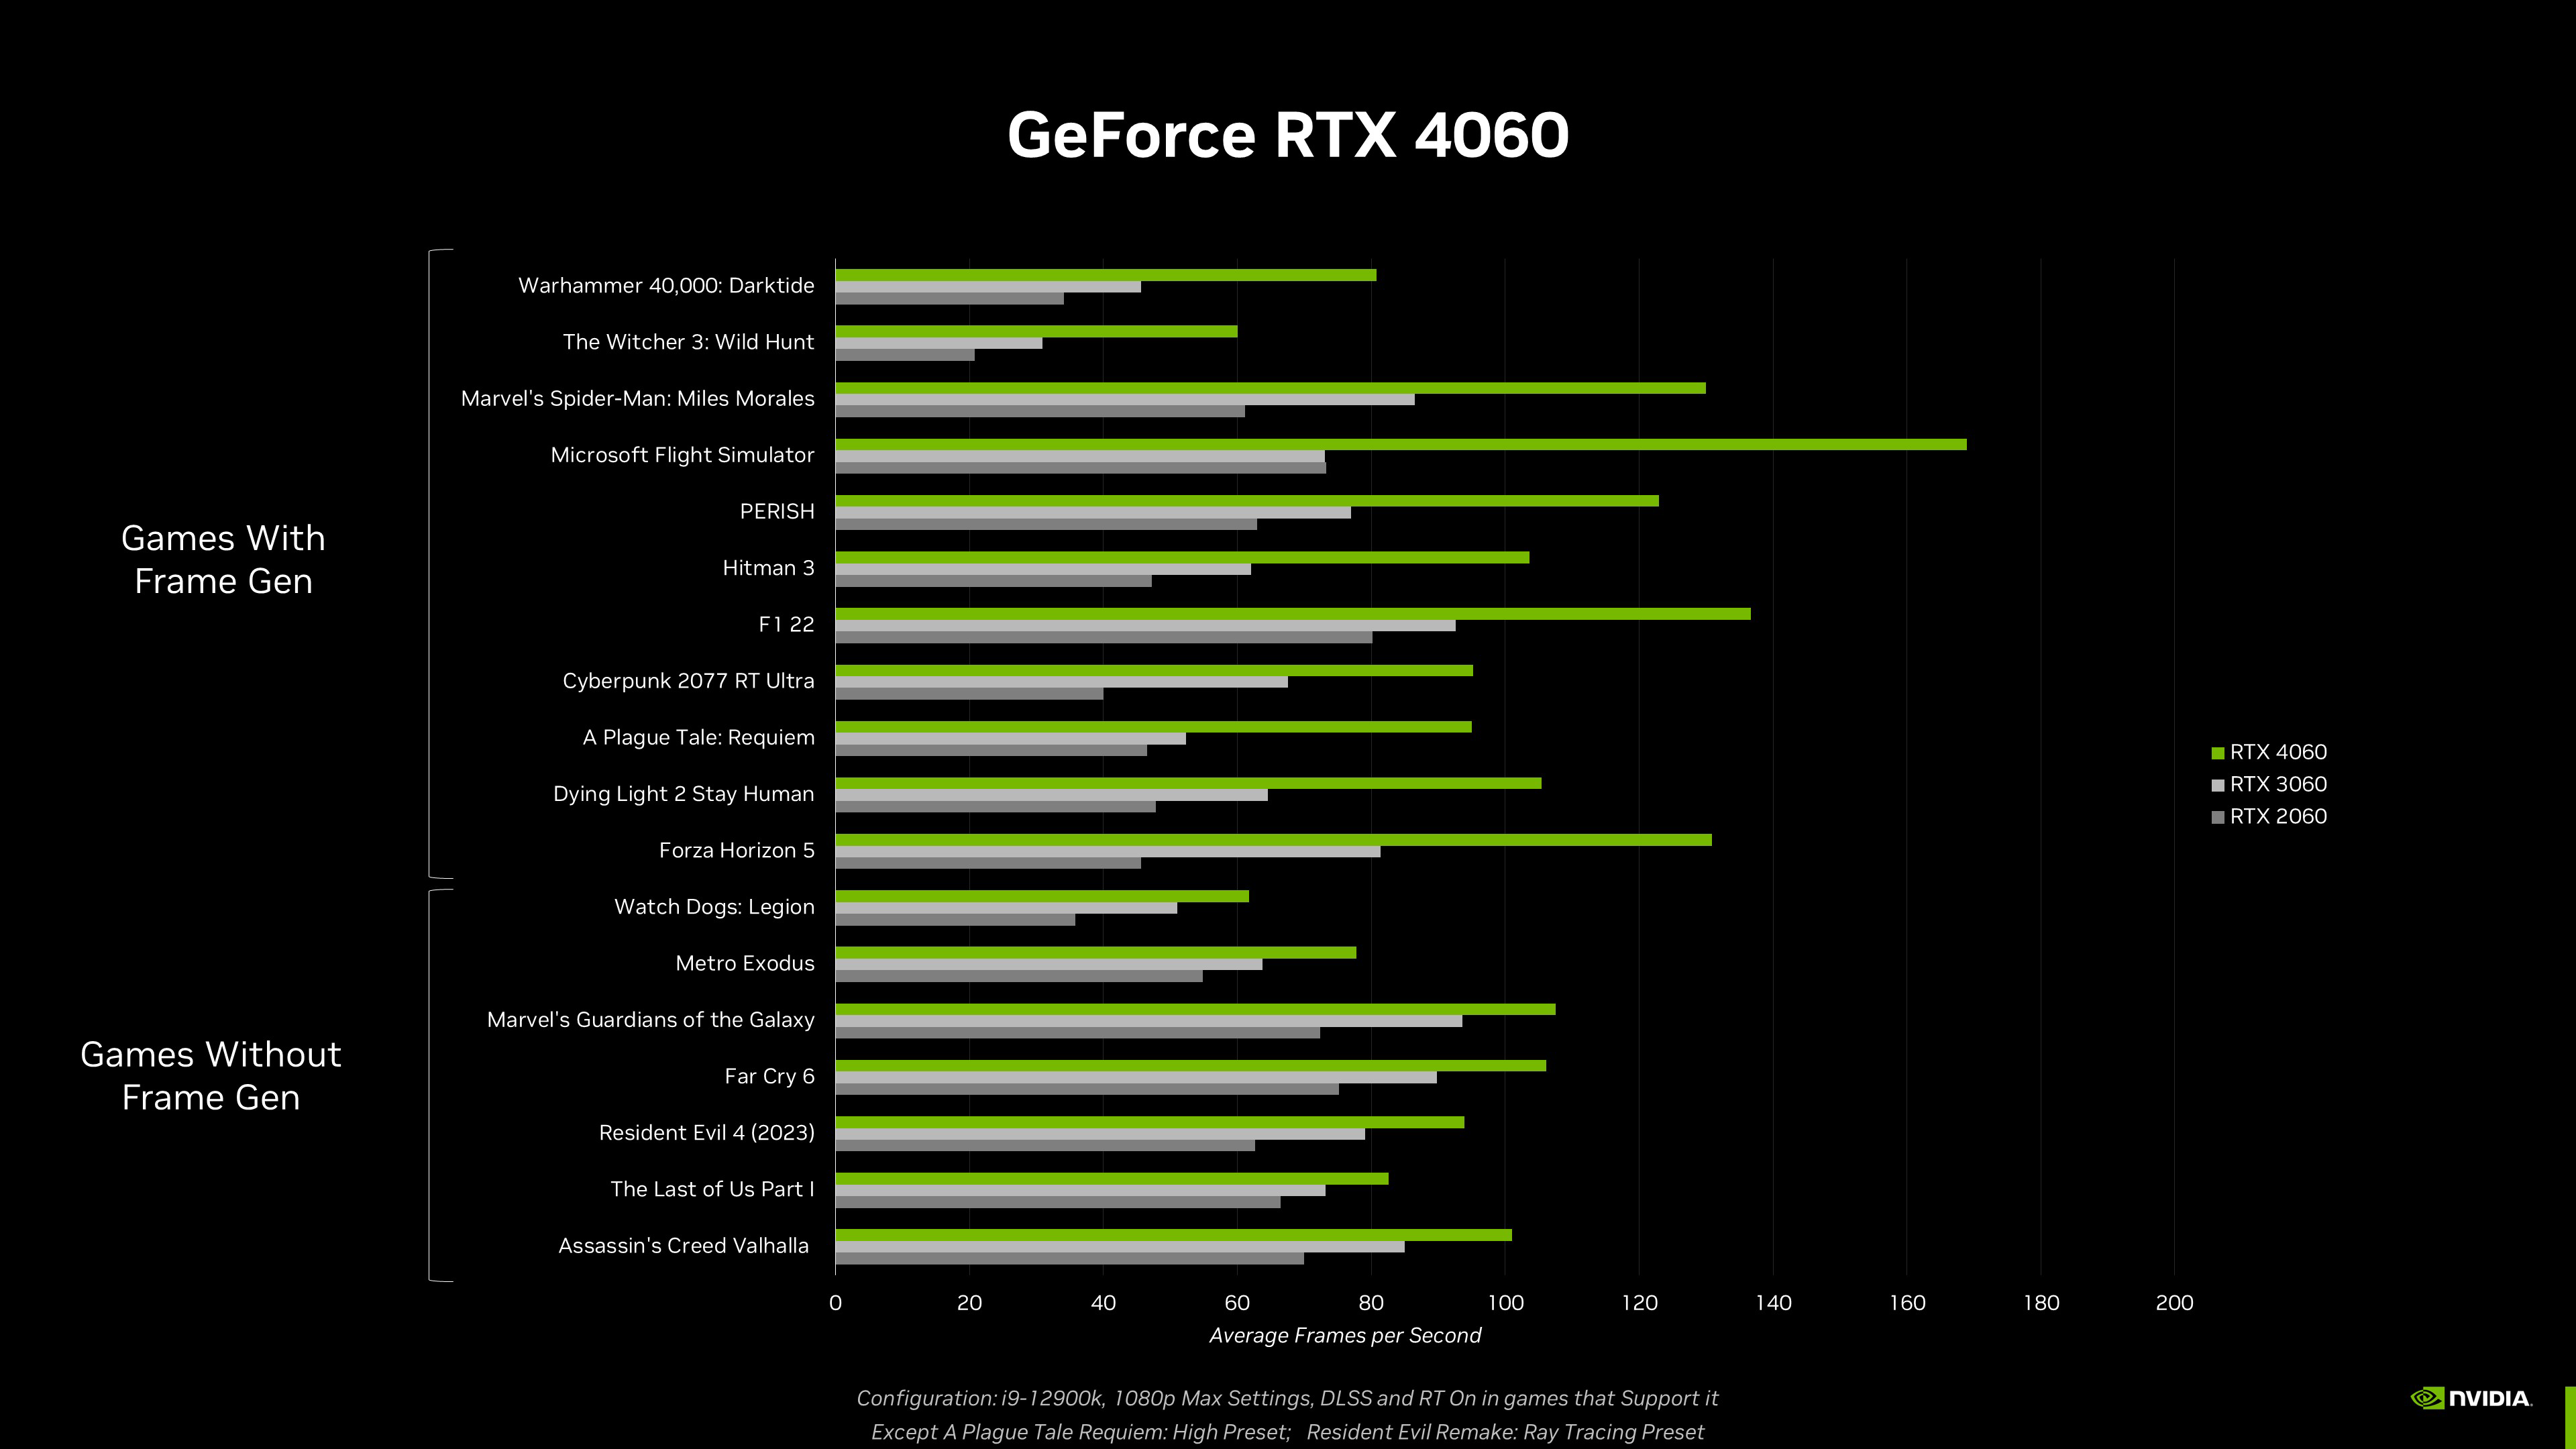 RTX 4060 Ti 16GB vs RTX 4070